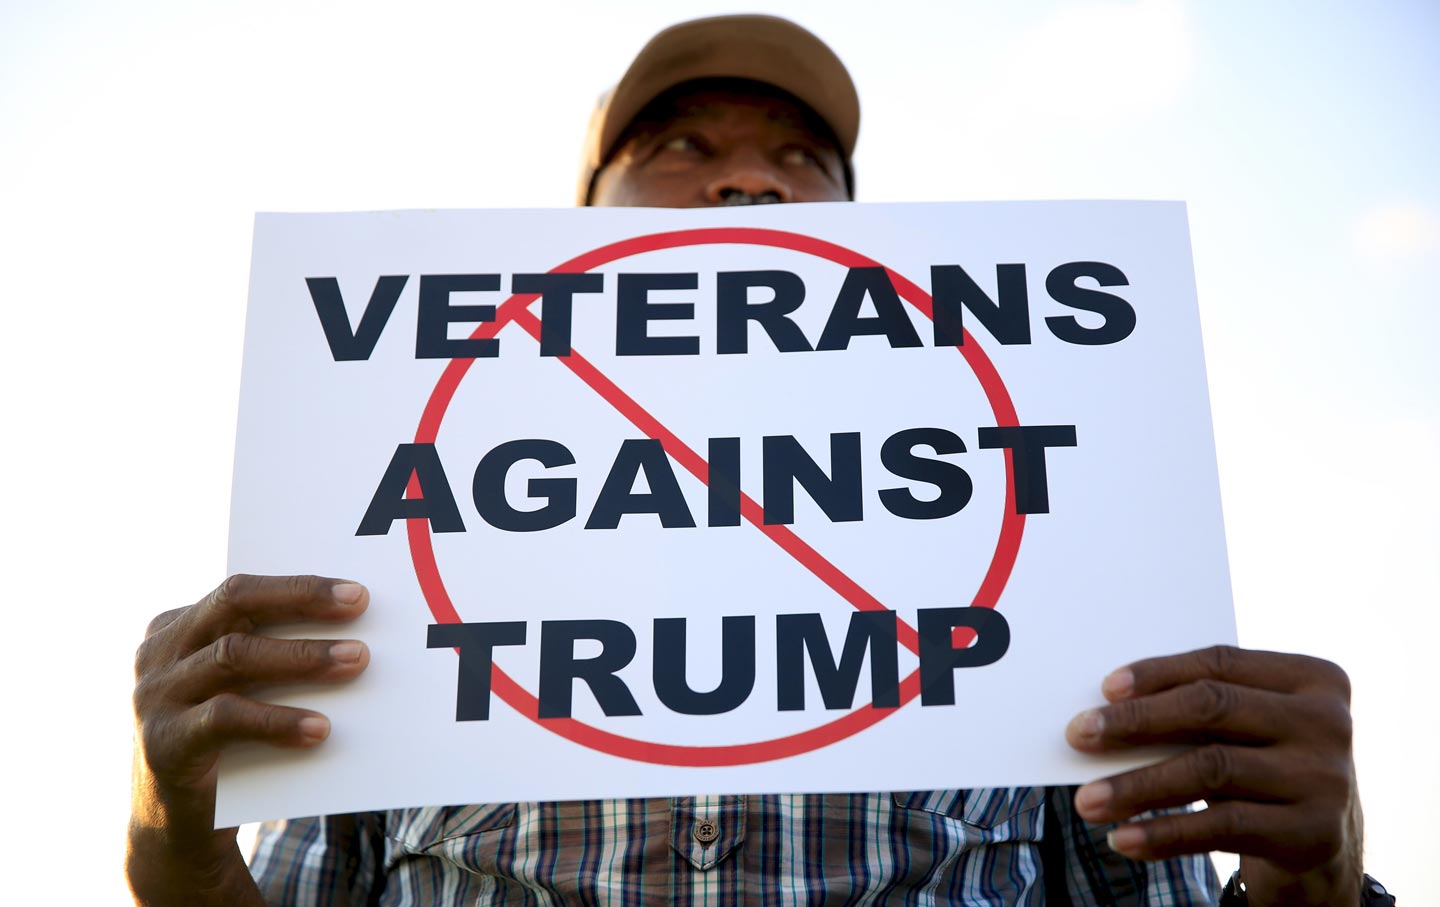 Veterans against Trump